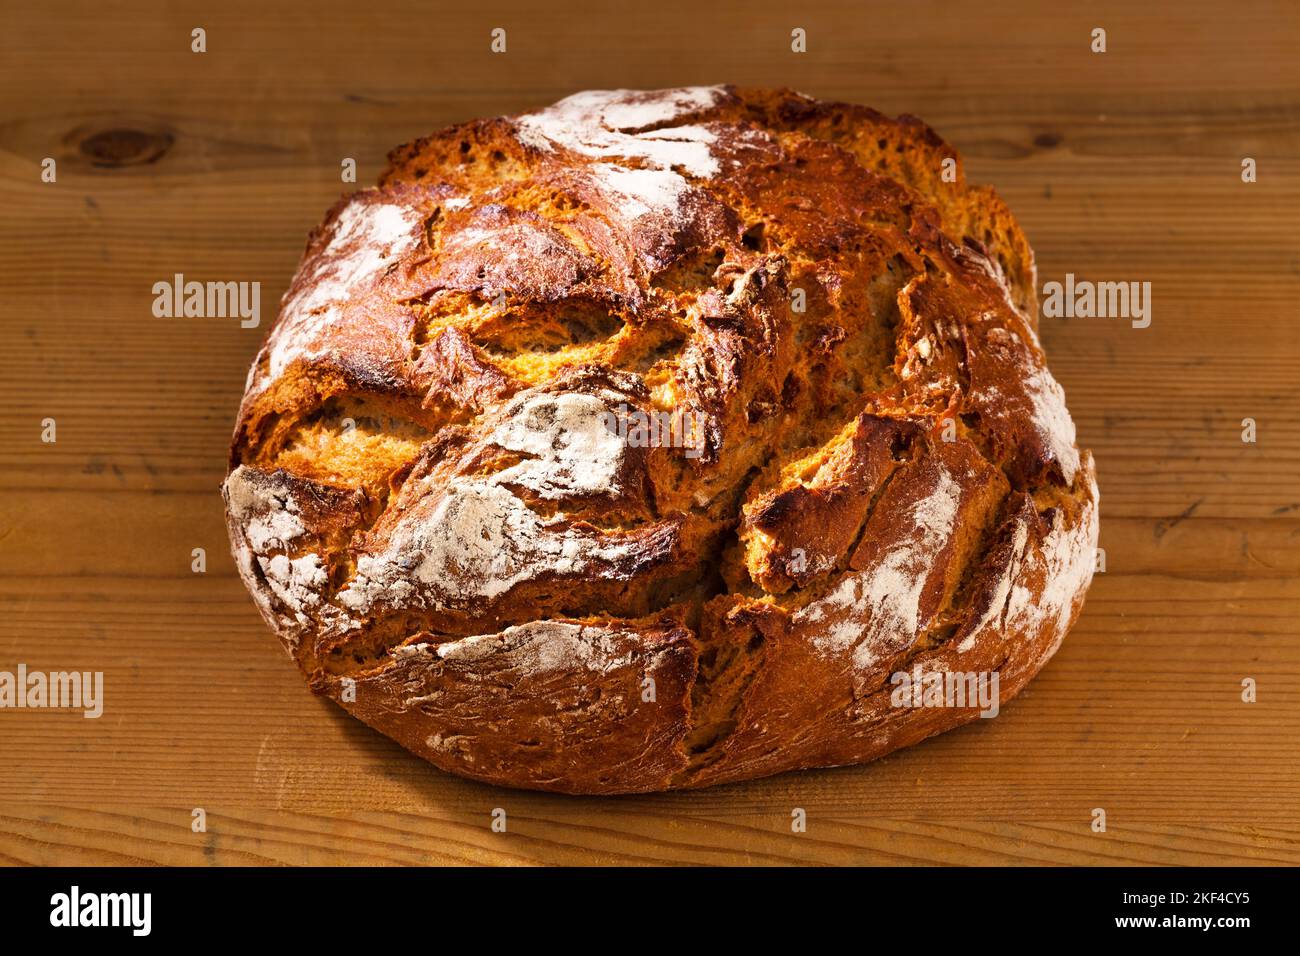 Ein  frischer Laib Brot, Gesunde Ernährung durch frische Backwaren, Krustenbrot, Stock Photo